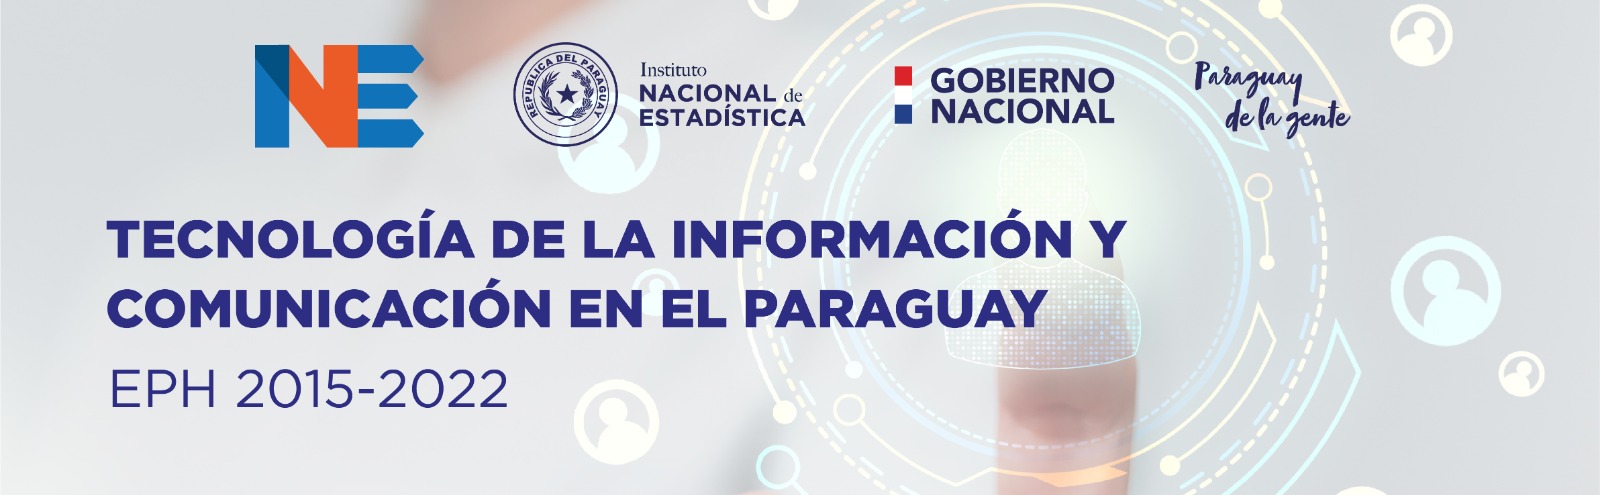 El INE presenta los principales datos sobre uso de Tecnología de la Información y Comunicación